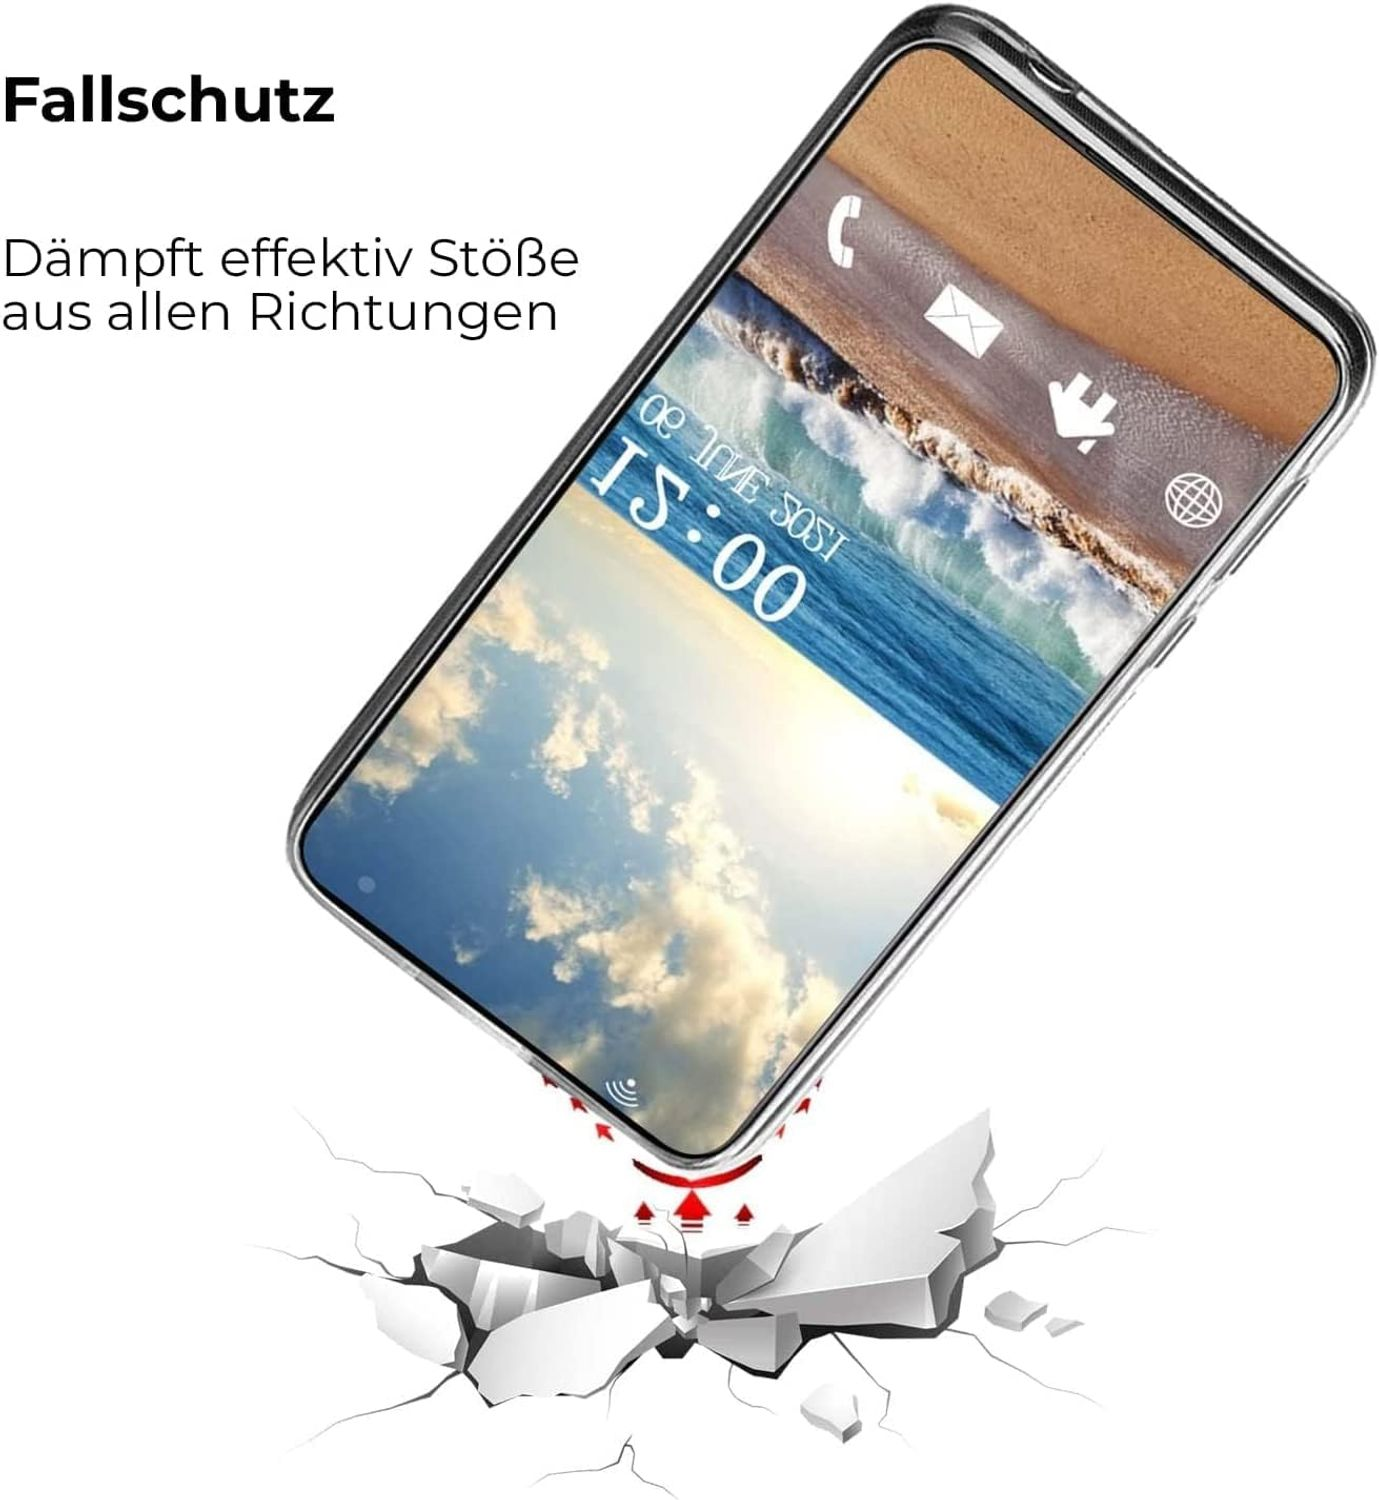 Schloß Neuschwannstein Case, Backcover, Samsung, Galaxy 4G, DESIGN A13 KÖNIG